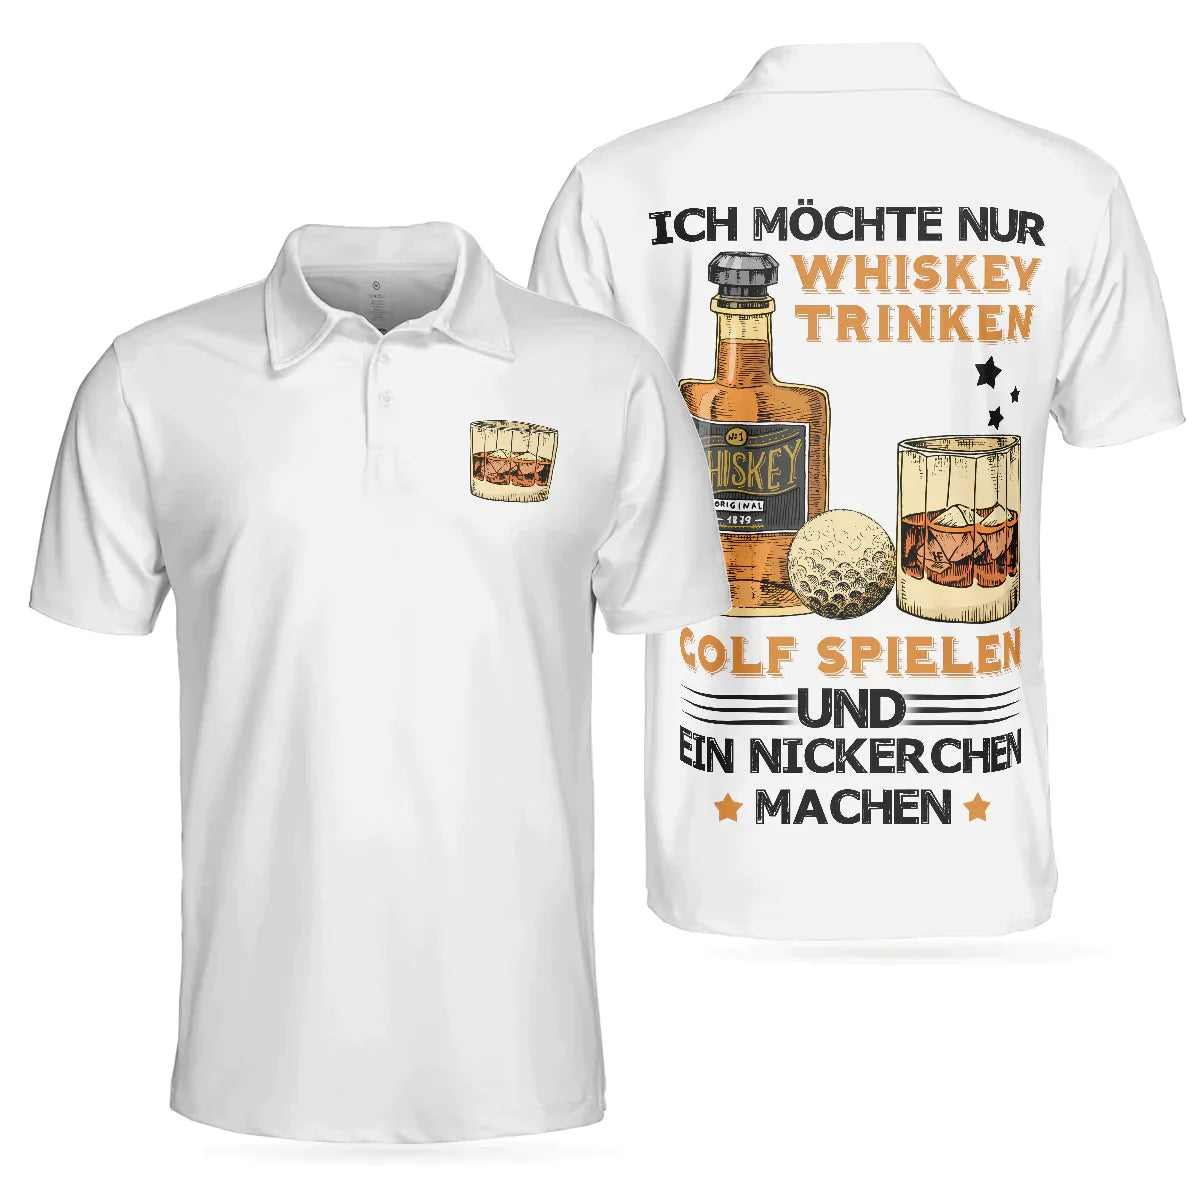 German Whiskey Golf Men Polo Shirt, Ich Möchte Nur Whisky Trinken, Golf Spielen Und Ein Nickerchen Machen Shirt For Men, Cool Male Gift For Wine Lovers - Amzanimalsgift